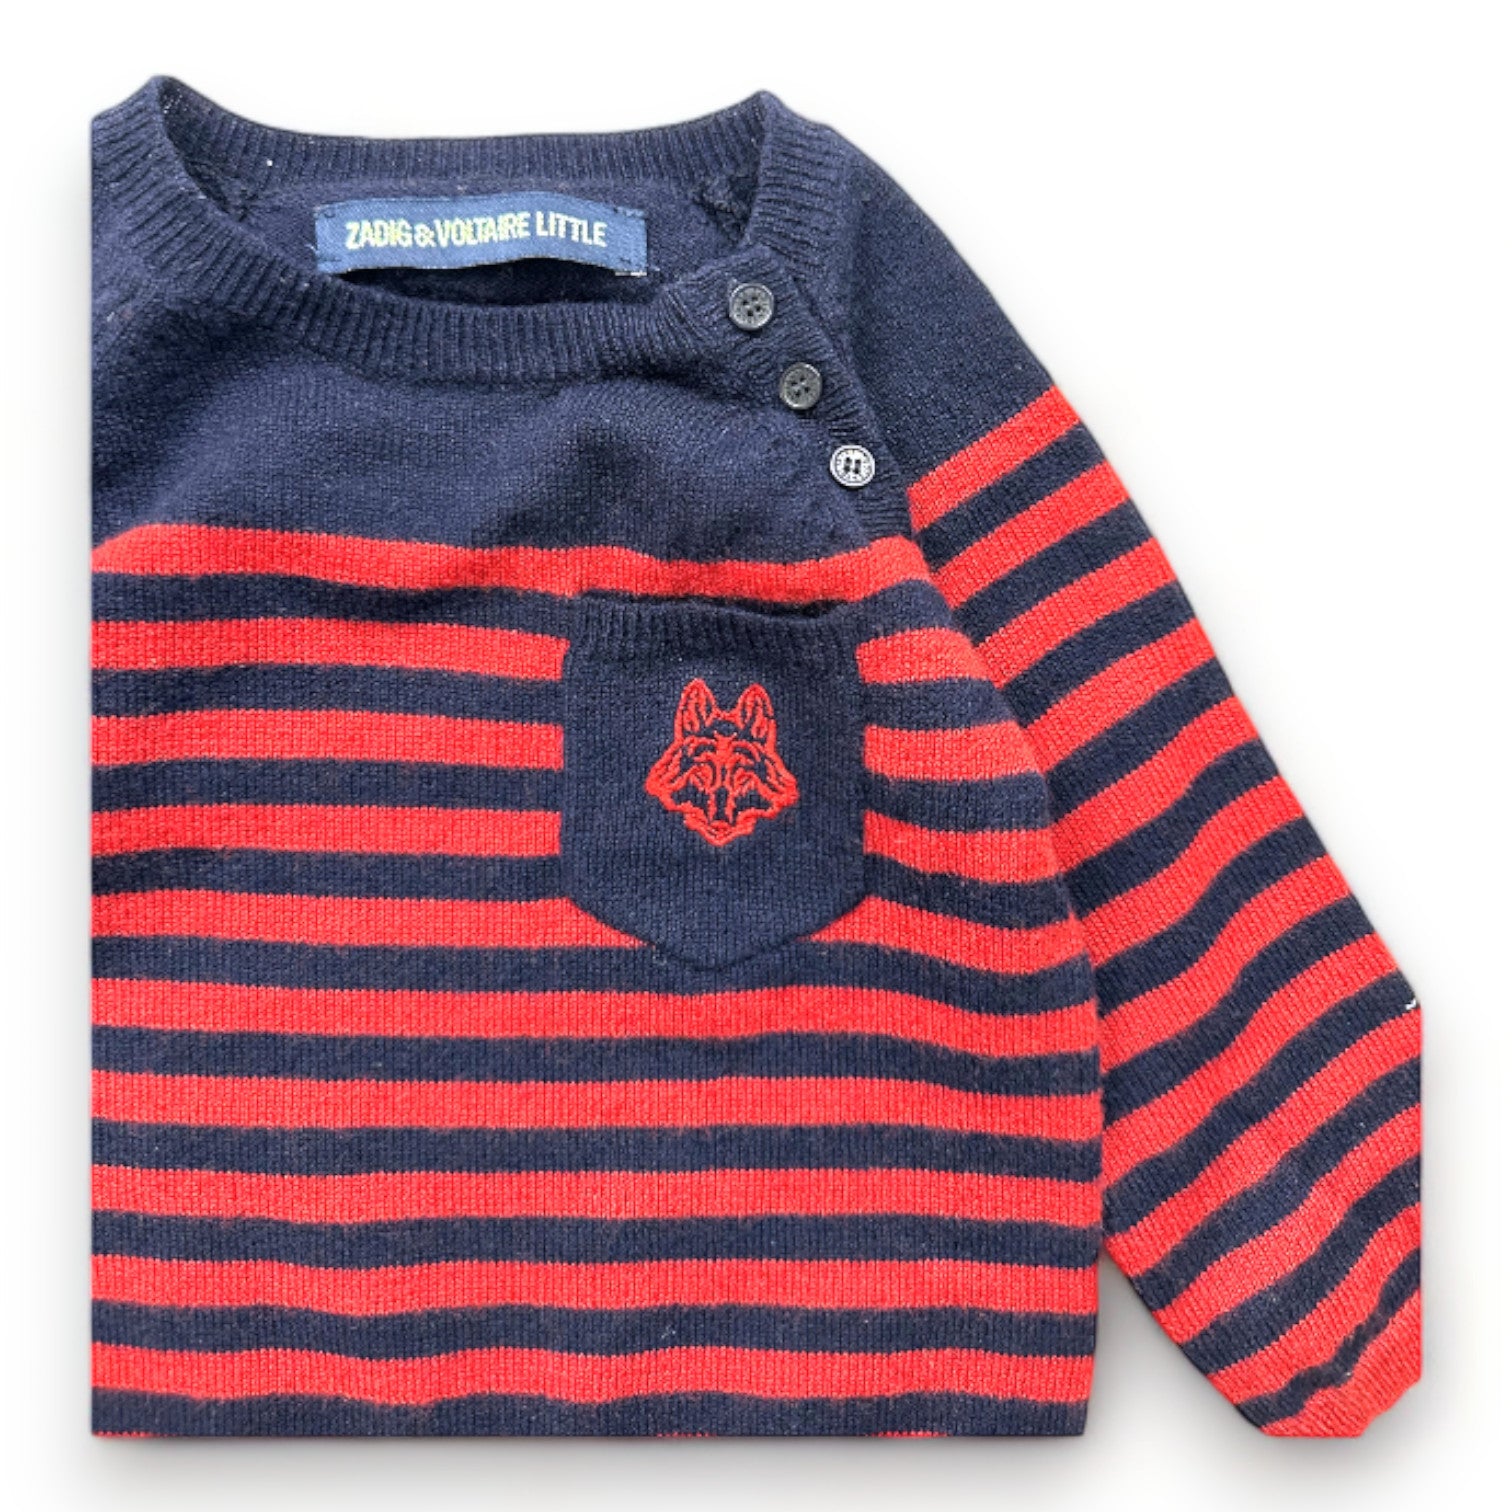 ZADIG & VOLTAIRE - Pull en laine rouge et bleu à rayures - 6 mois